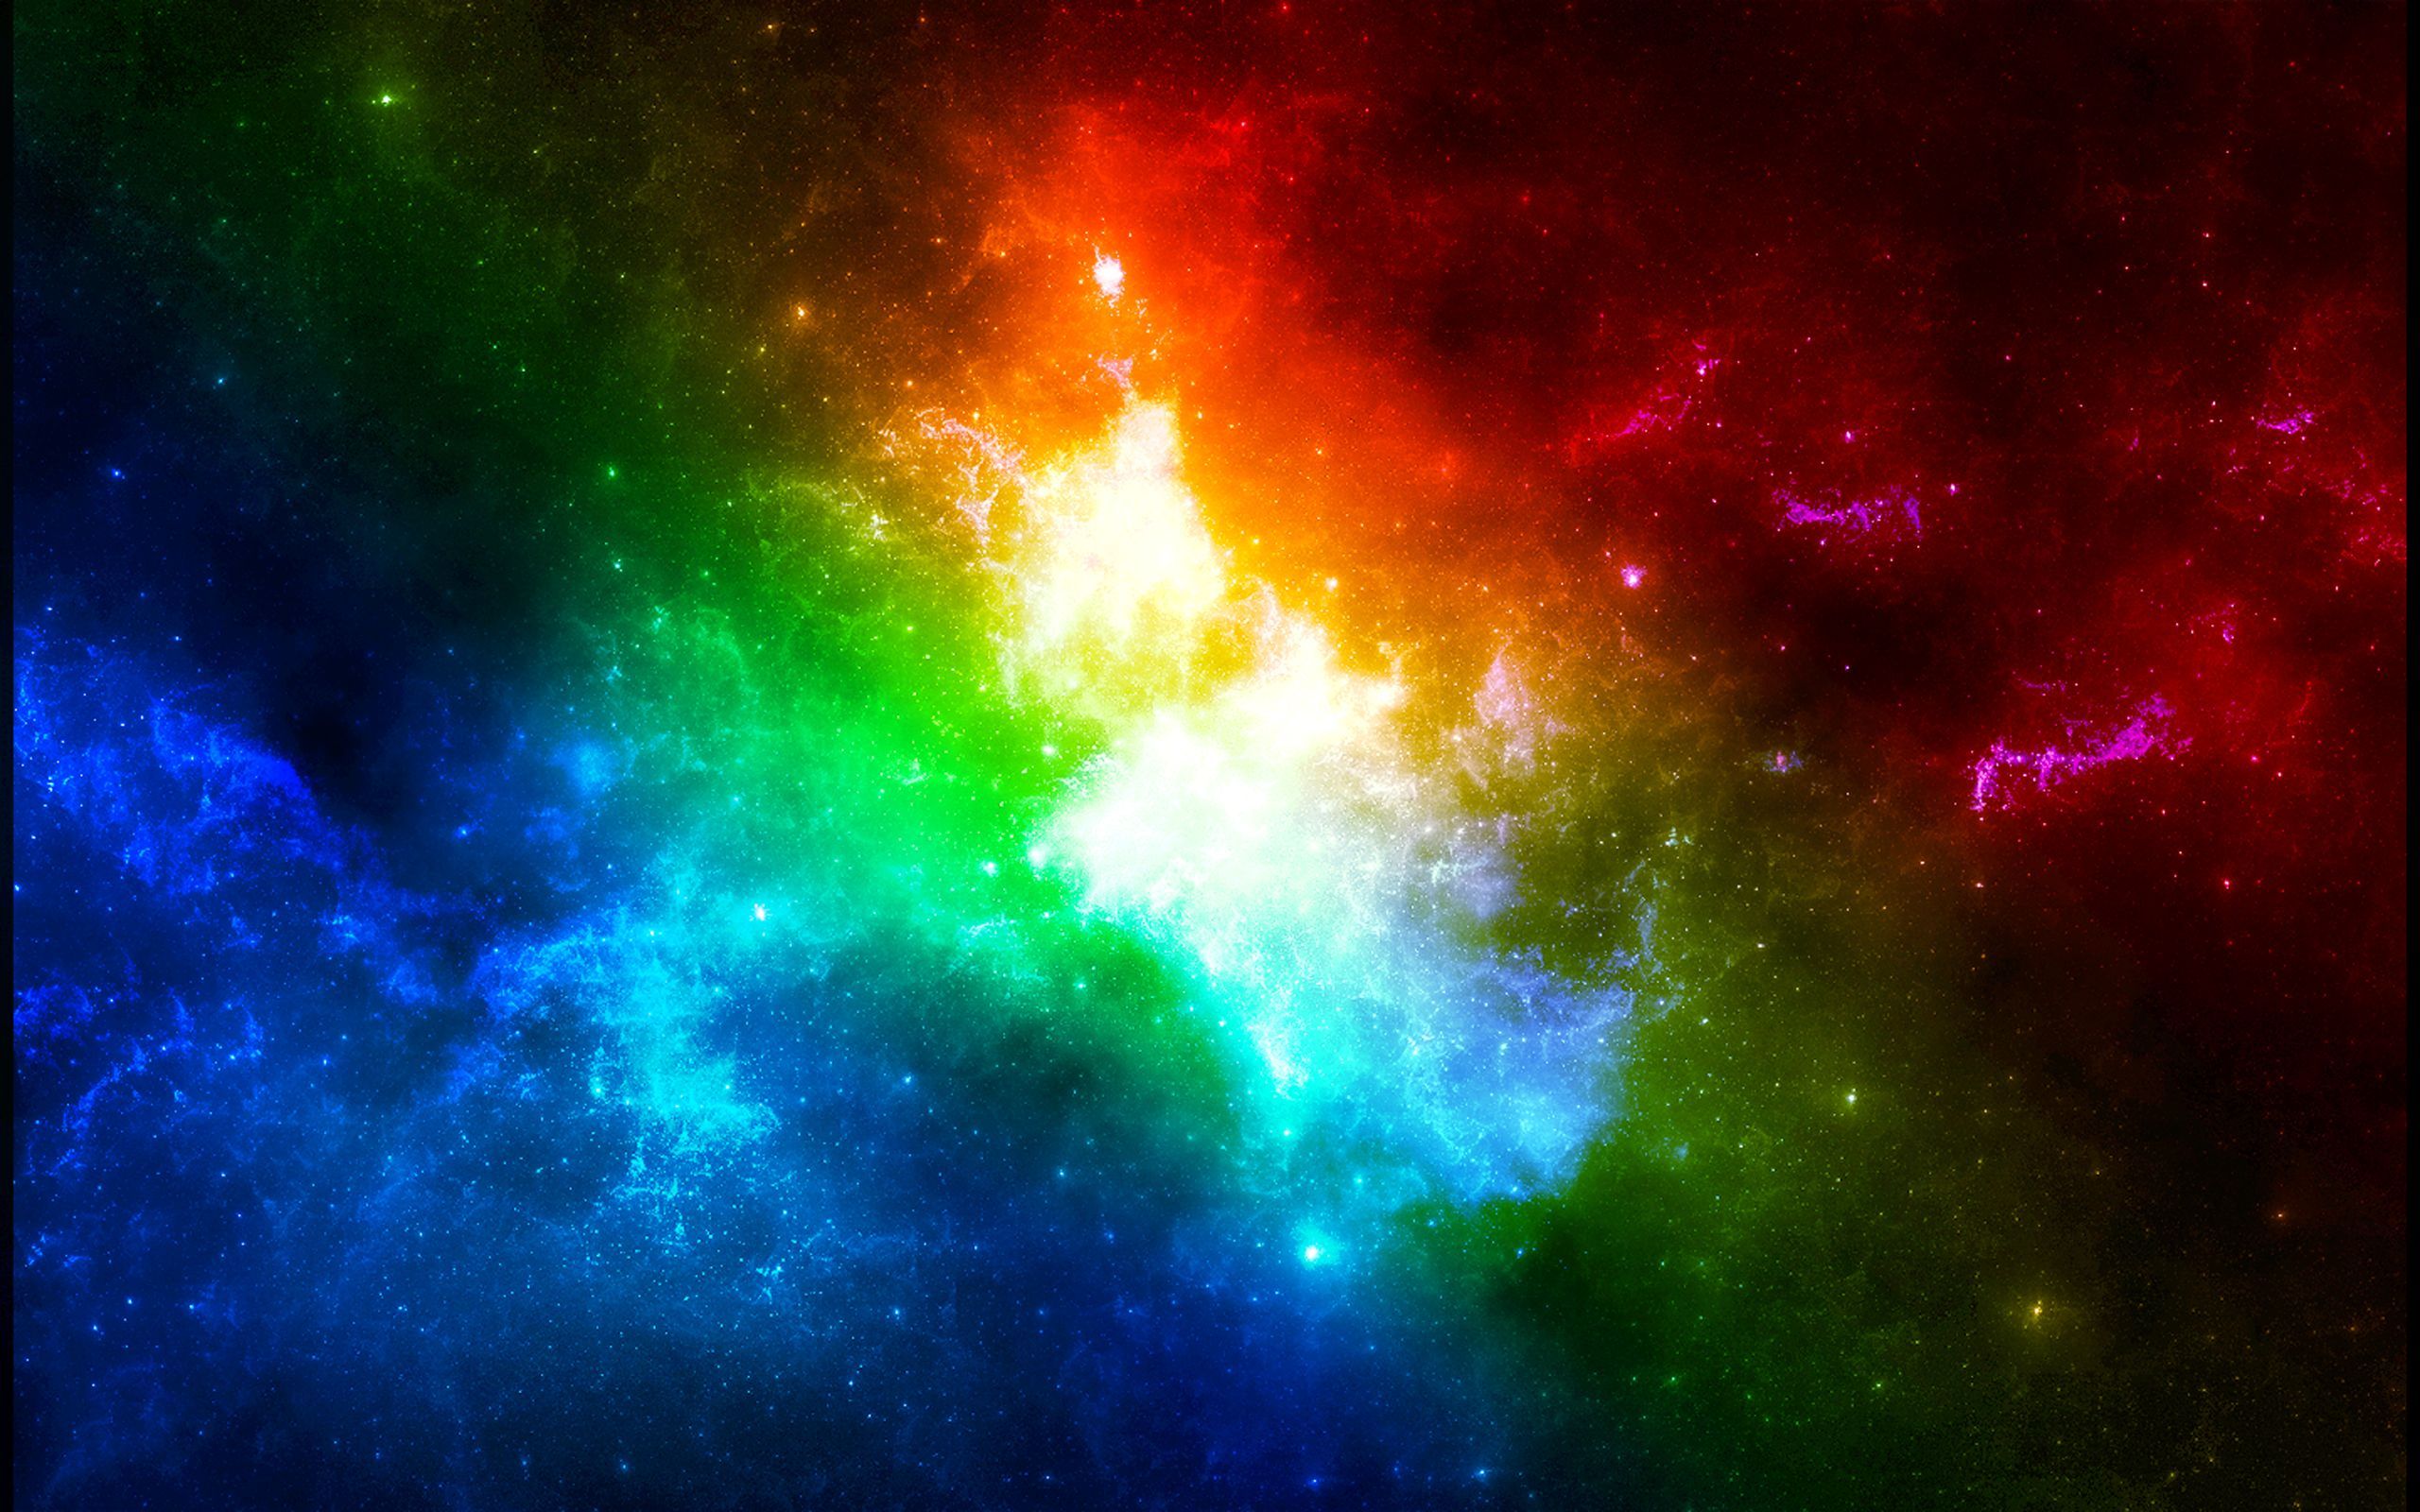 Hãy trang hoàng cho màn hình của bạn với hình nền Galaxy cầu vồng huyền thoại này. Hình ảnh này tái hiện một vũ trụ đầy sắc màu và đầy tính sáng tạo. Bạn sẽ cảm thấy như bạn đang ngồi sau tấm kính của một phi thuyền vũ trụ, ngắm nhìn cảnh tượng tuyệt đẹp.